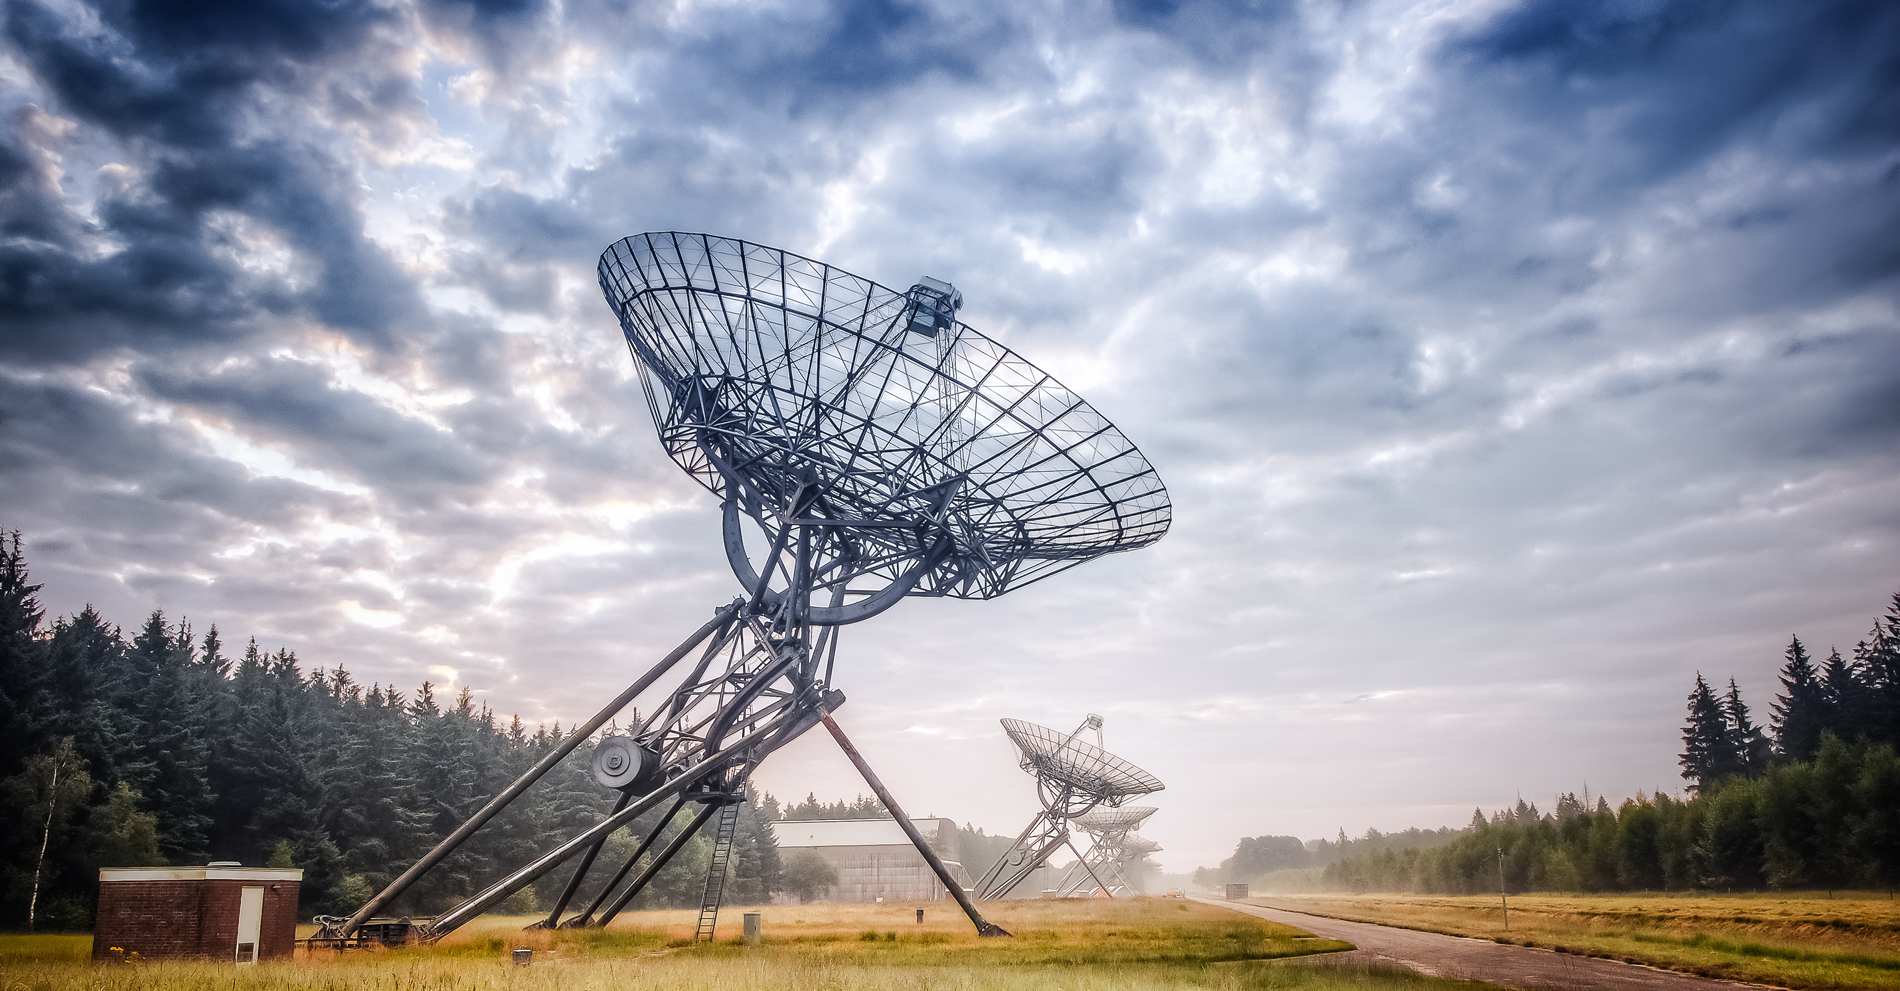 professionell satellitecommunication worldwide by satellite telecom